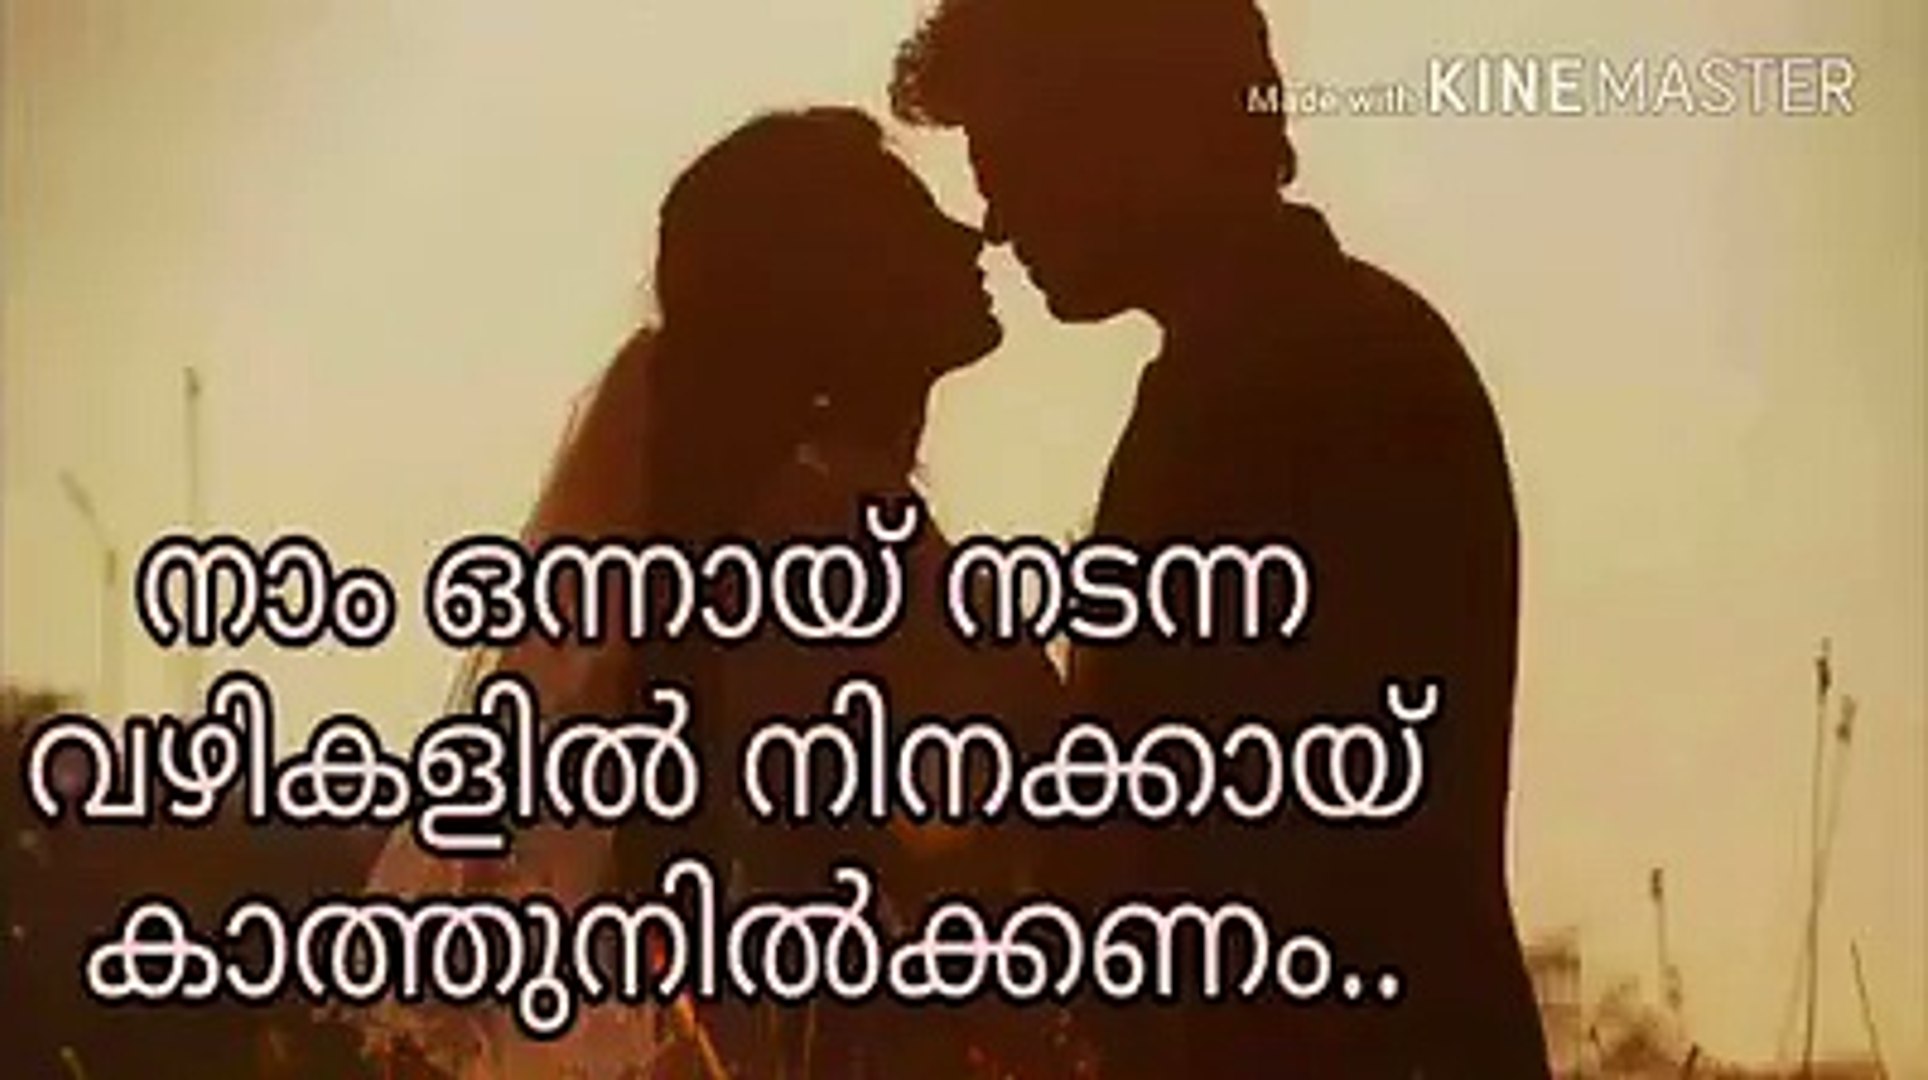 Malayalam Whatsapp Status Love Malayalam Love Quotes Video